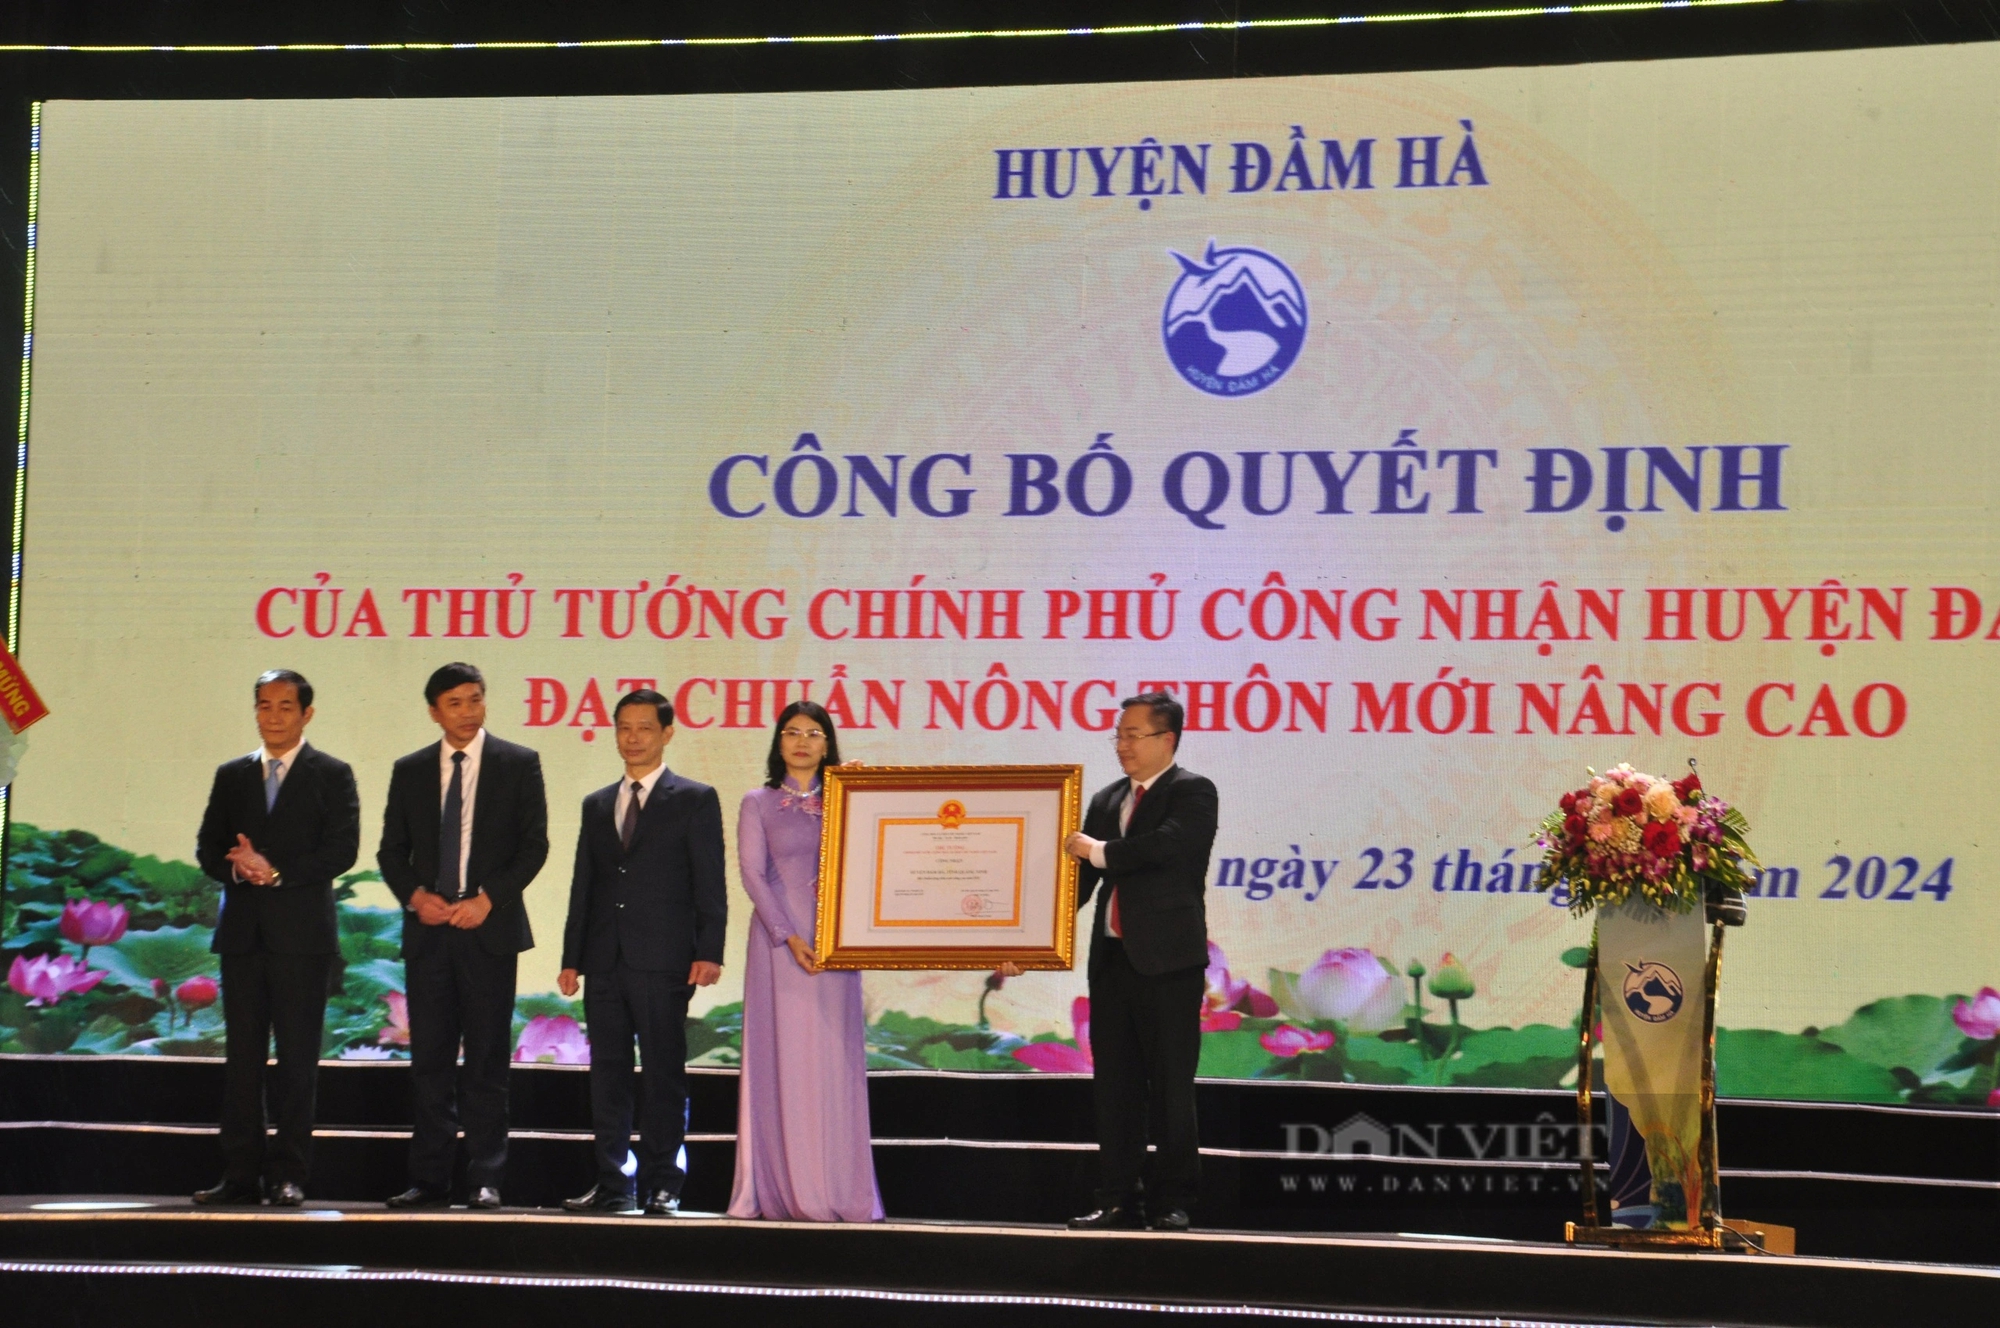 Từ một huyện nông thôn mới của Quảng Ninh đến huyện đạt chuẩn nông thôn mới nâng cao đầu tiên của Việt Nam- Ảnh 7.